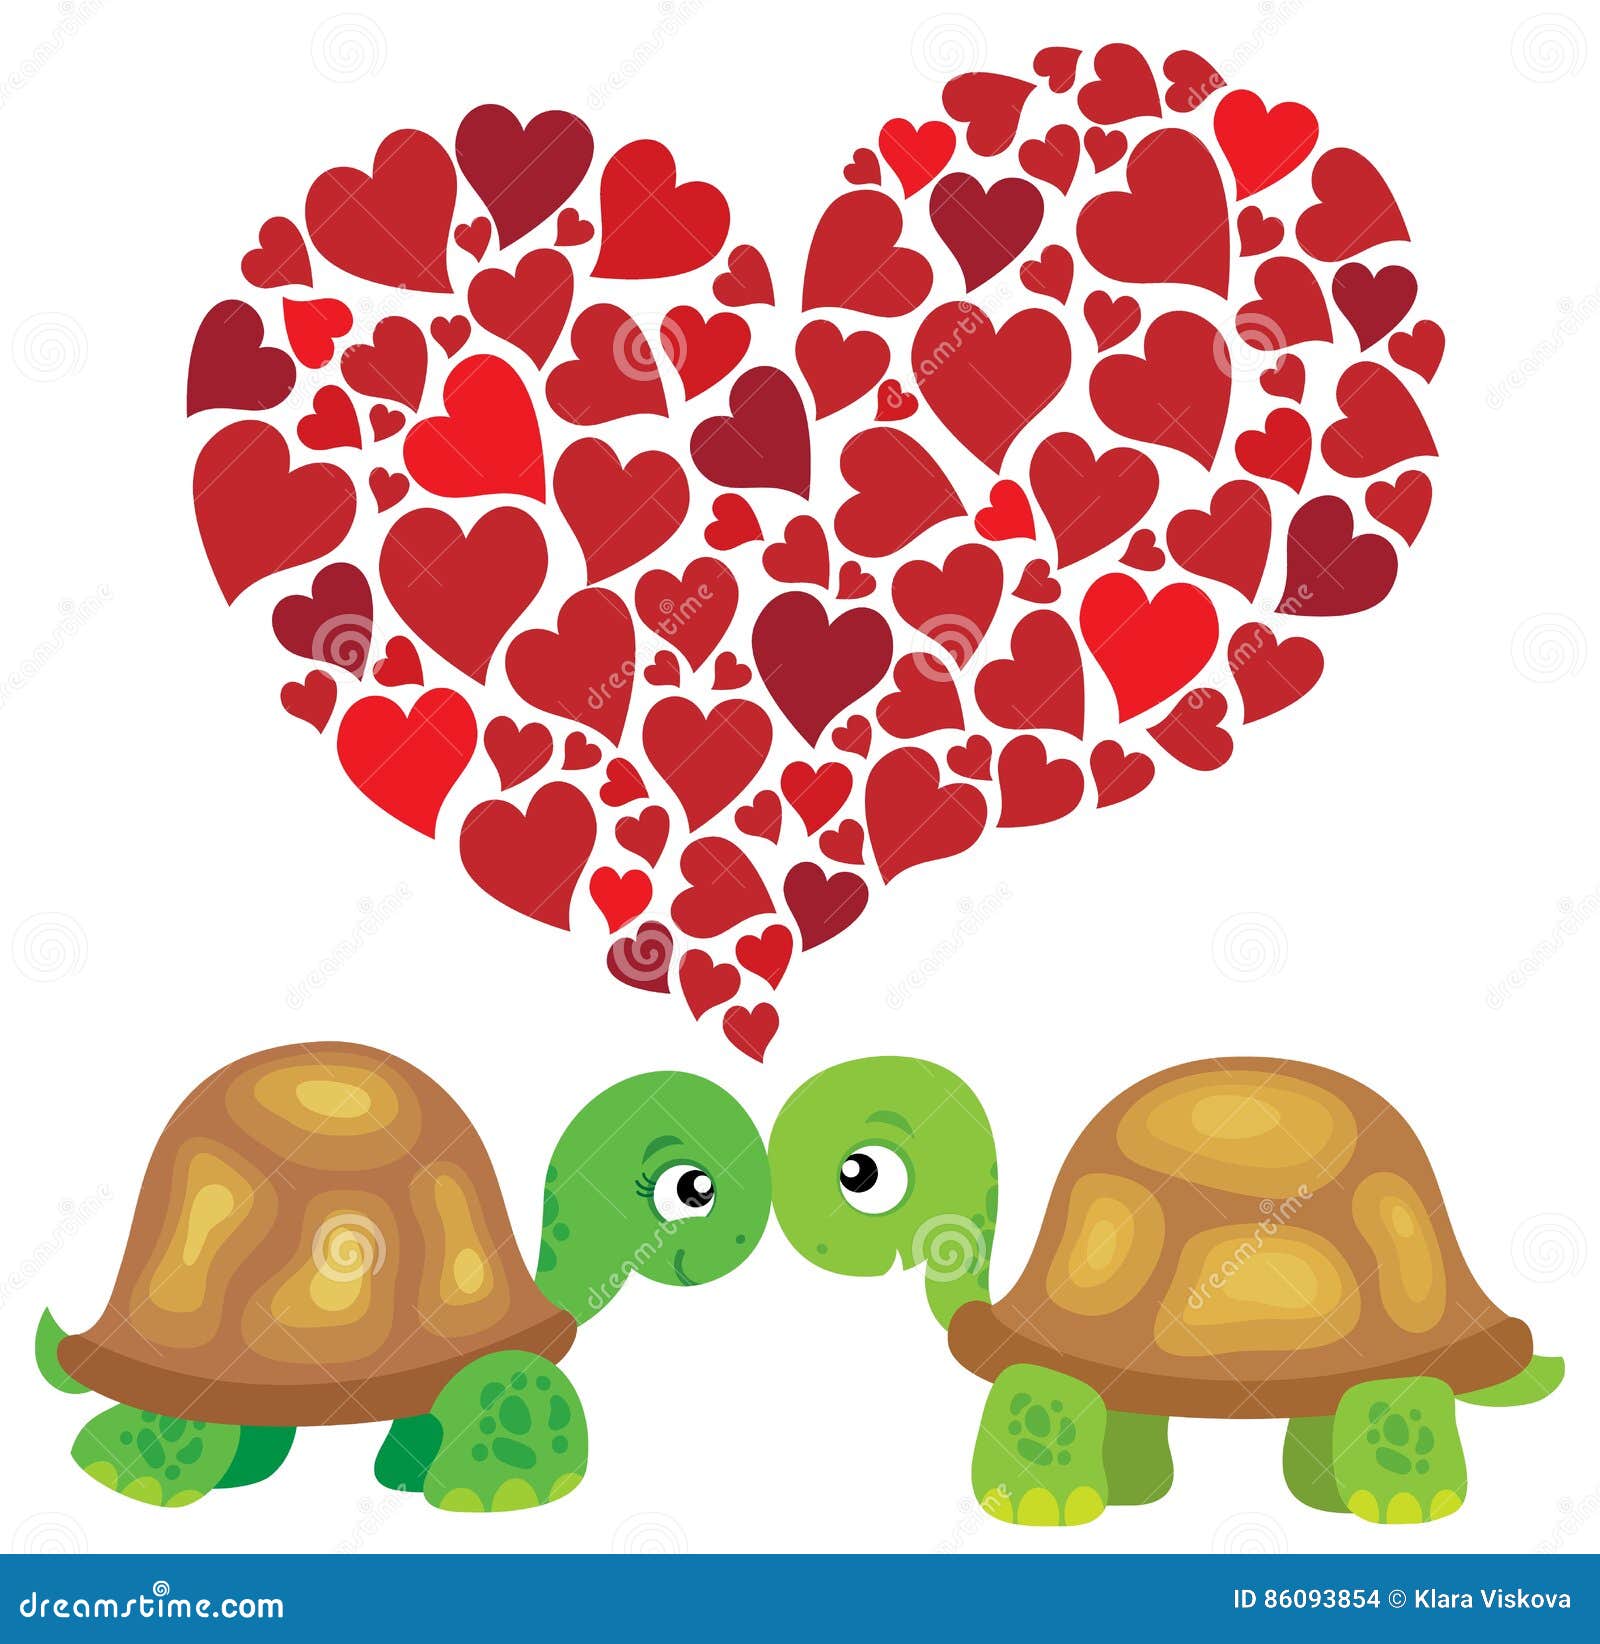 Сердце черепахи поделено на два. Валентинка с черепашкой. Черепашка с сердечком.